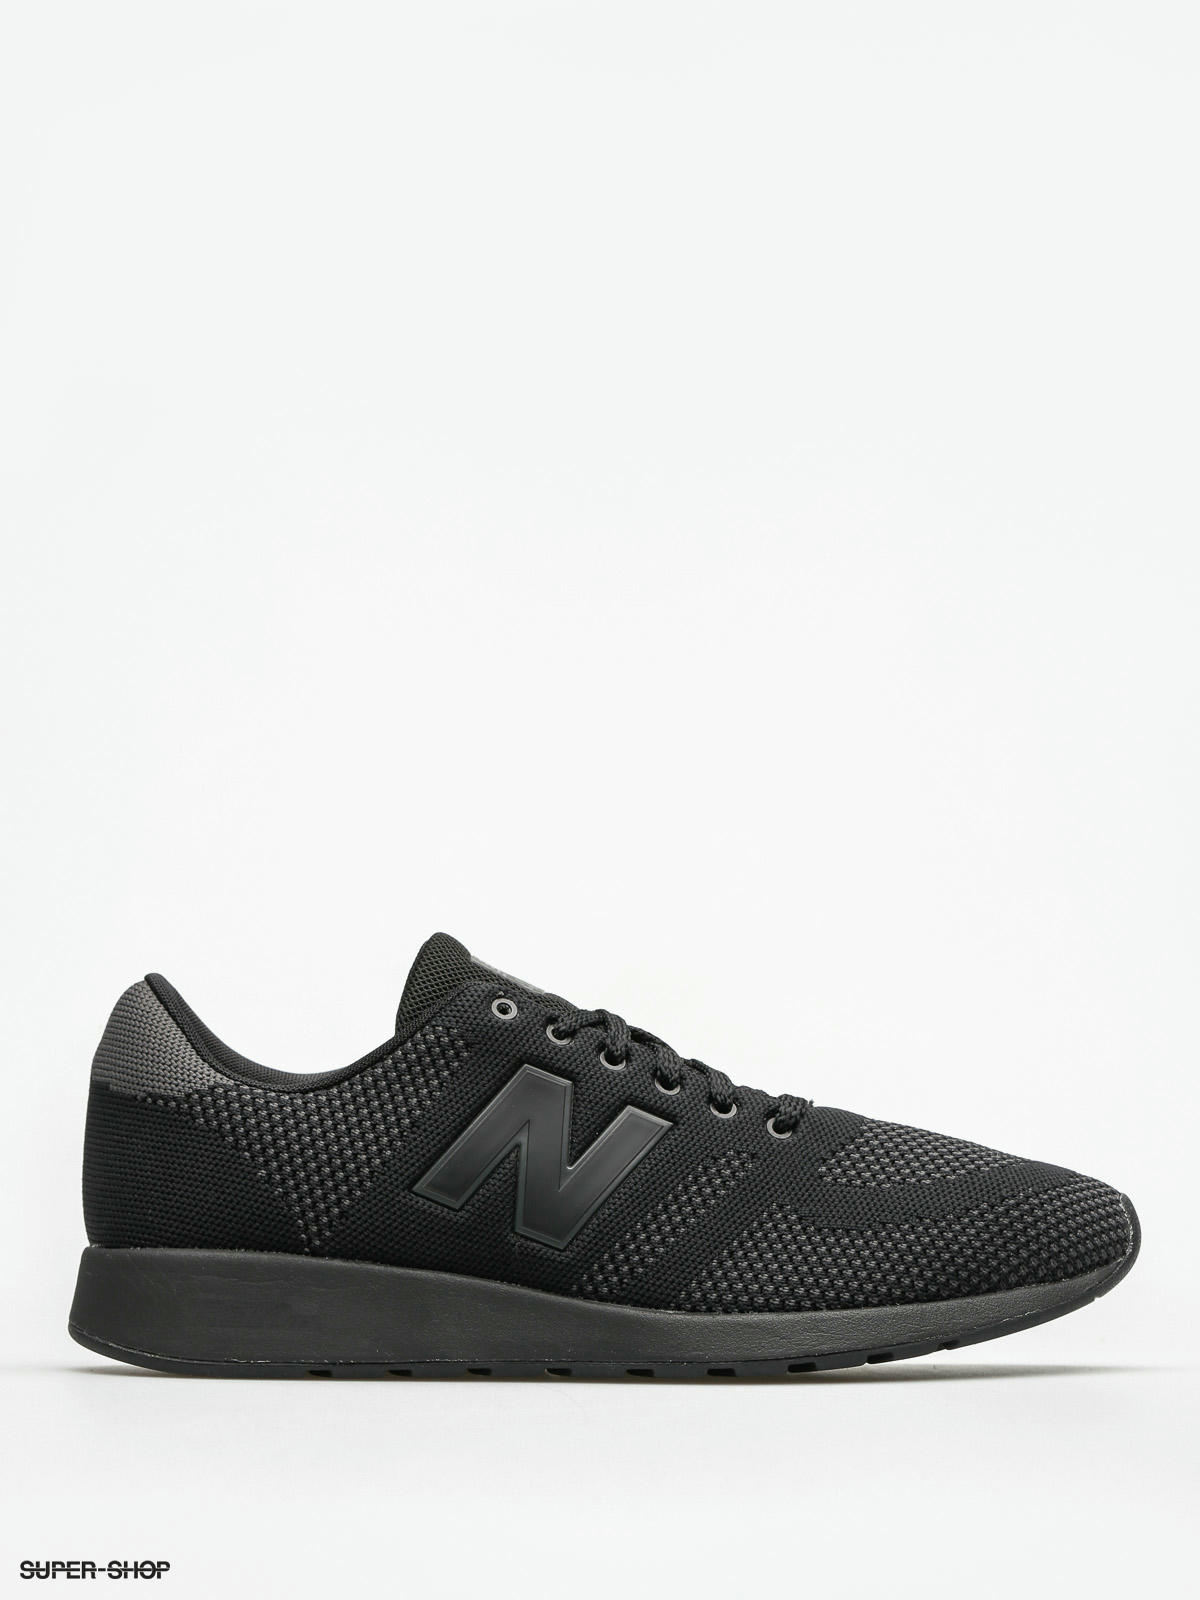 Worstelen koel systematisch New Balance Shoes 420 (black)